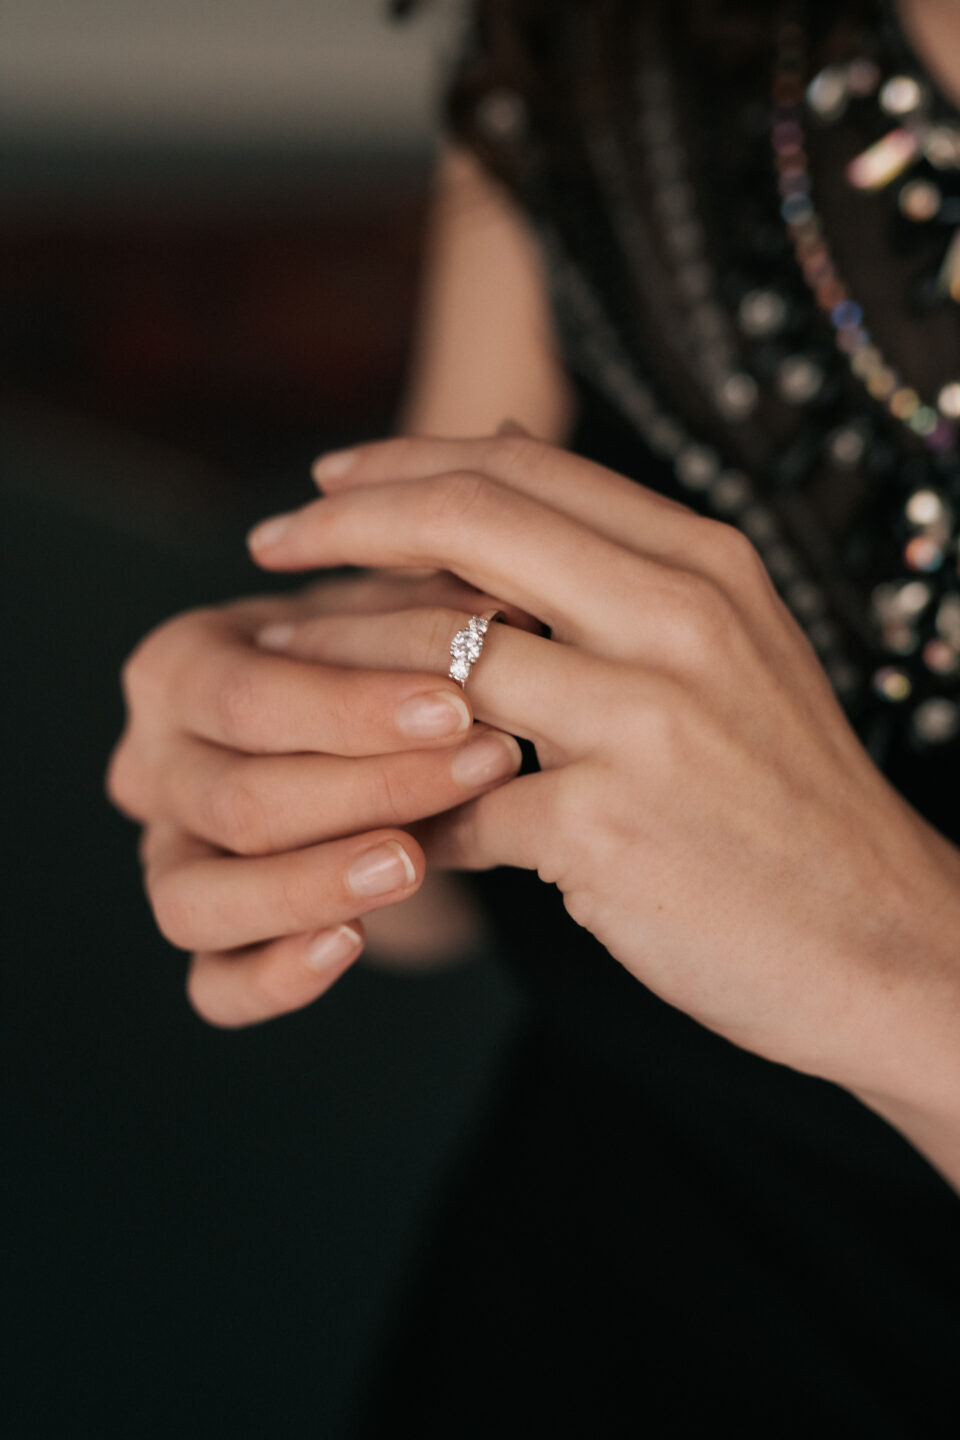 Verlobungsring aus Mönchengladbach am Finger einer Frau